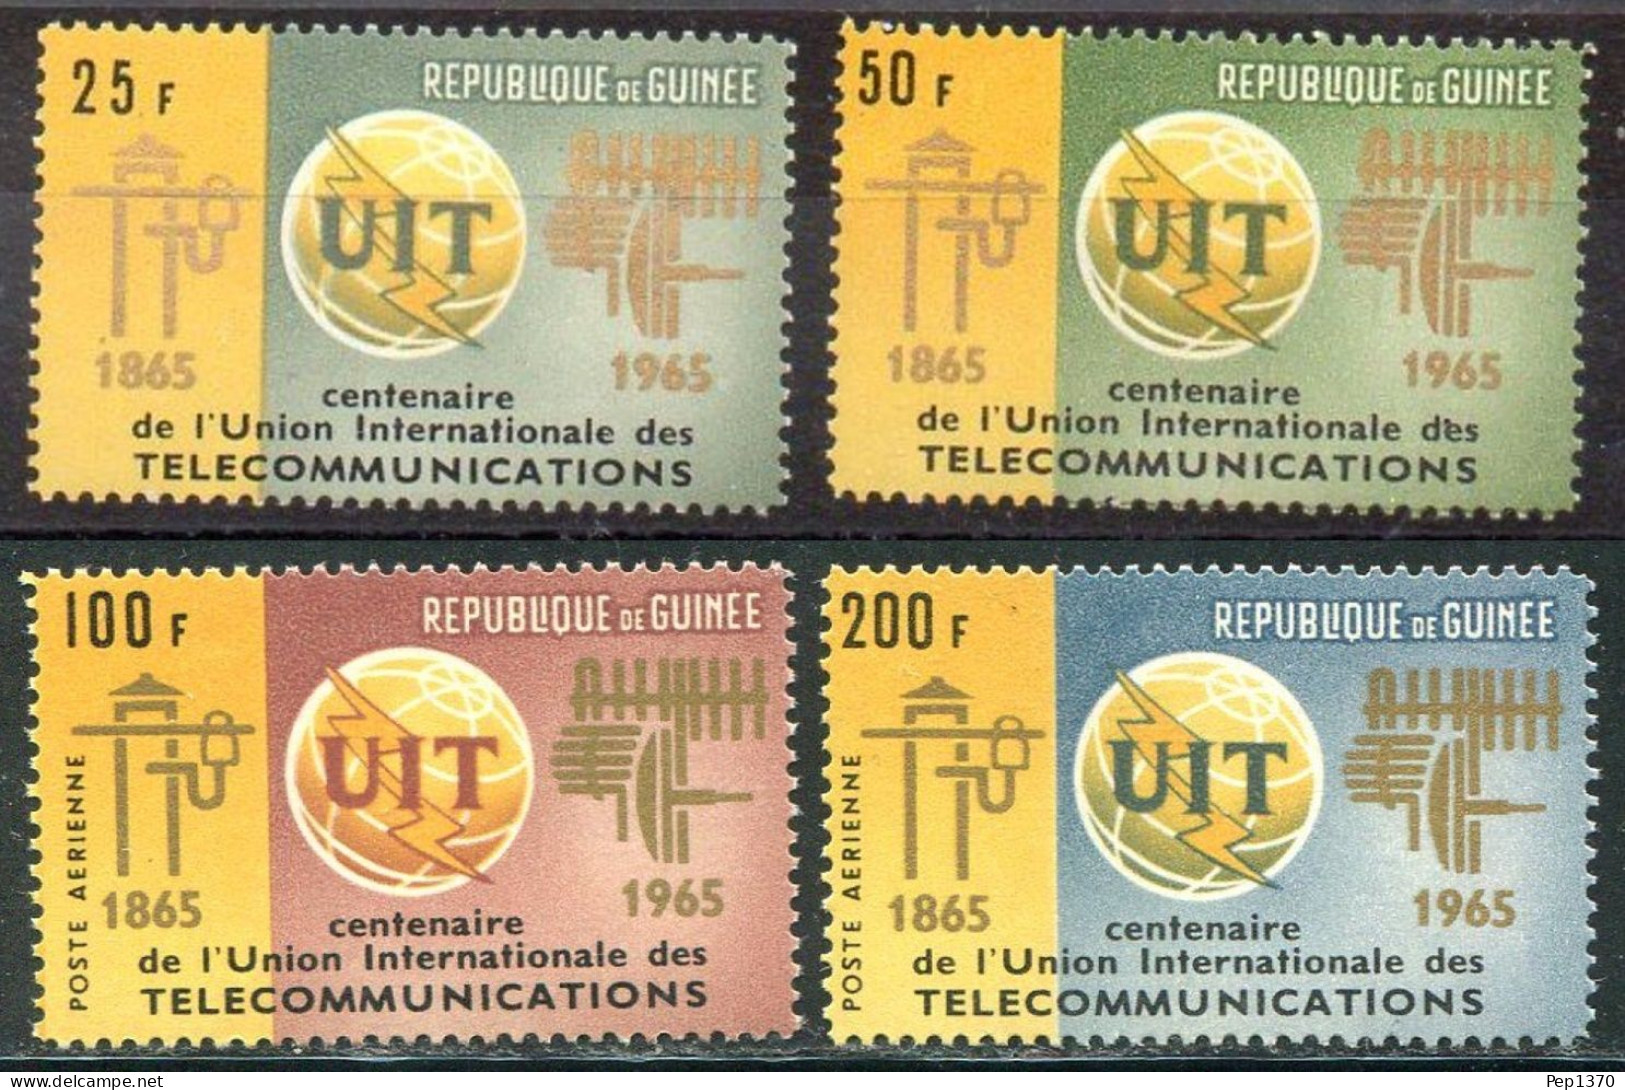 GUINEA 1965 - REPUBLIQUE DE GUINÉE -UIT - UNION INTERNACIONAL DE TELECOMUNICACIONES - YVERT 242/243**+ AEREOS 54/55** - Guinea (1958-...)